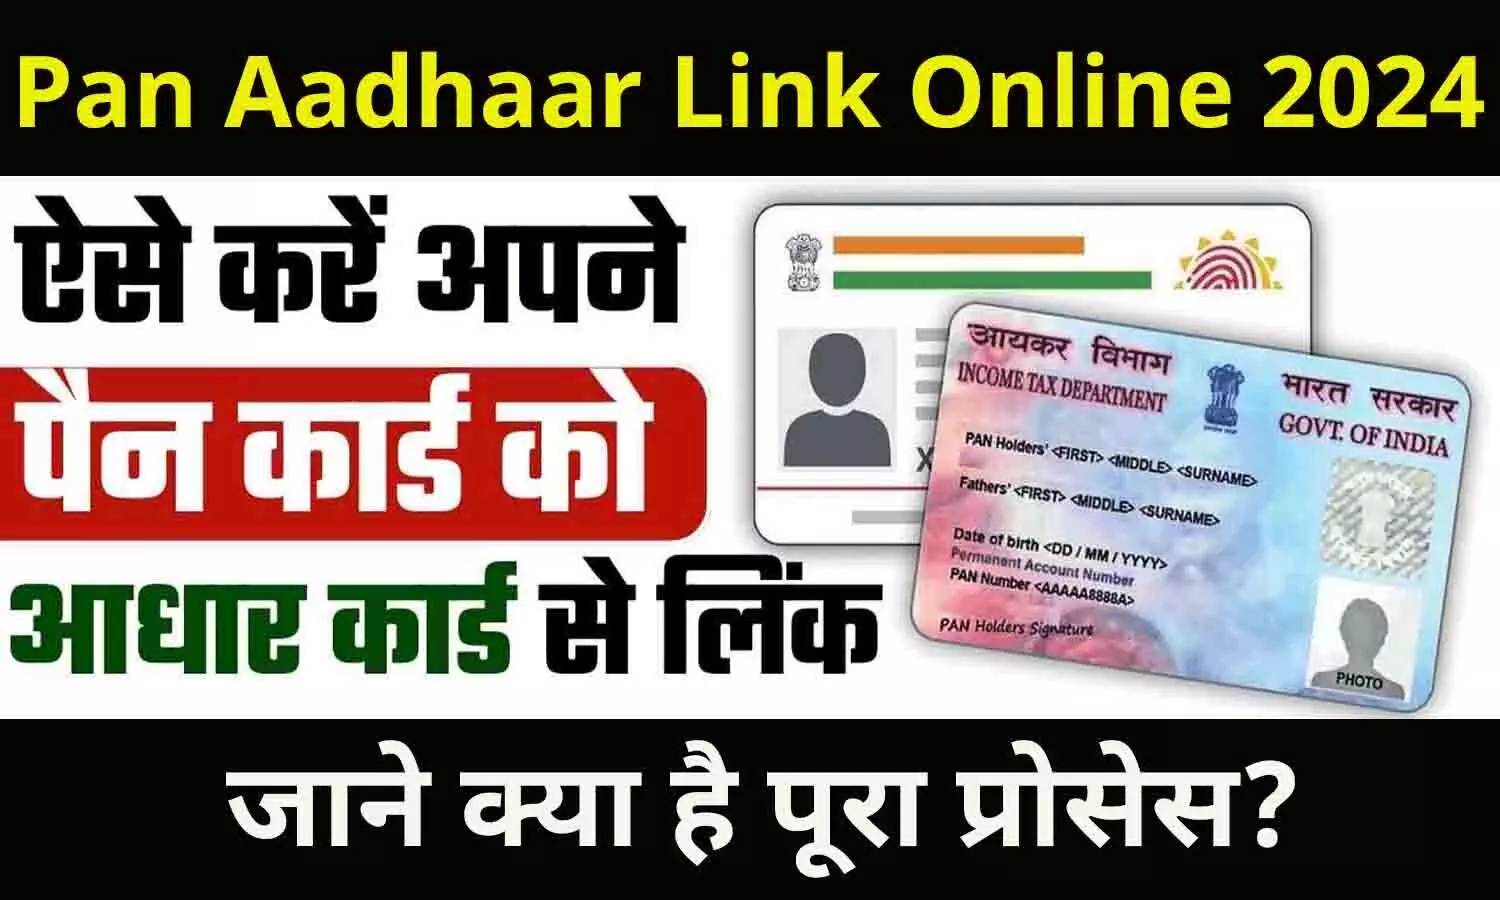 Pan Aadhaar Link Online 2024: ₹1000 के चार्ज के साथ ऐसे करें अपने पैन कार्ड को आधार कार्ड से लिंक, जाने क्या है पूरा प्रोसेस?